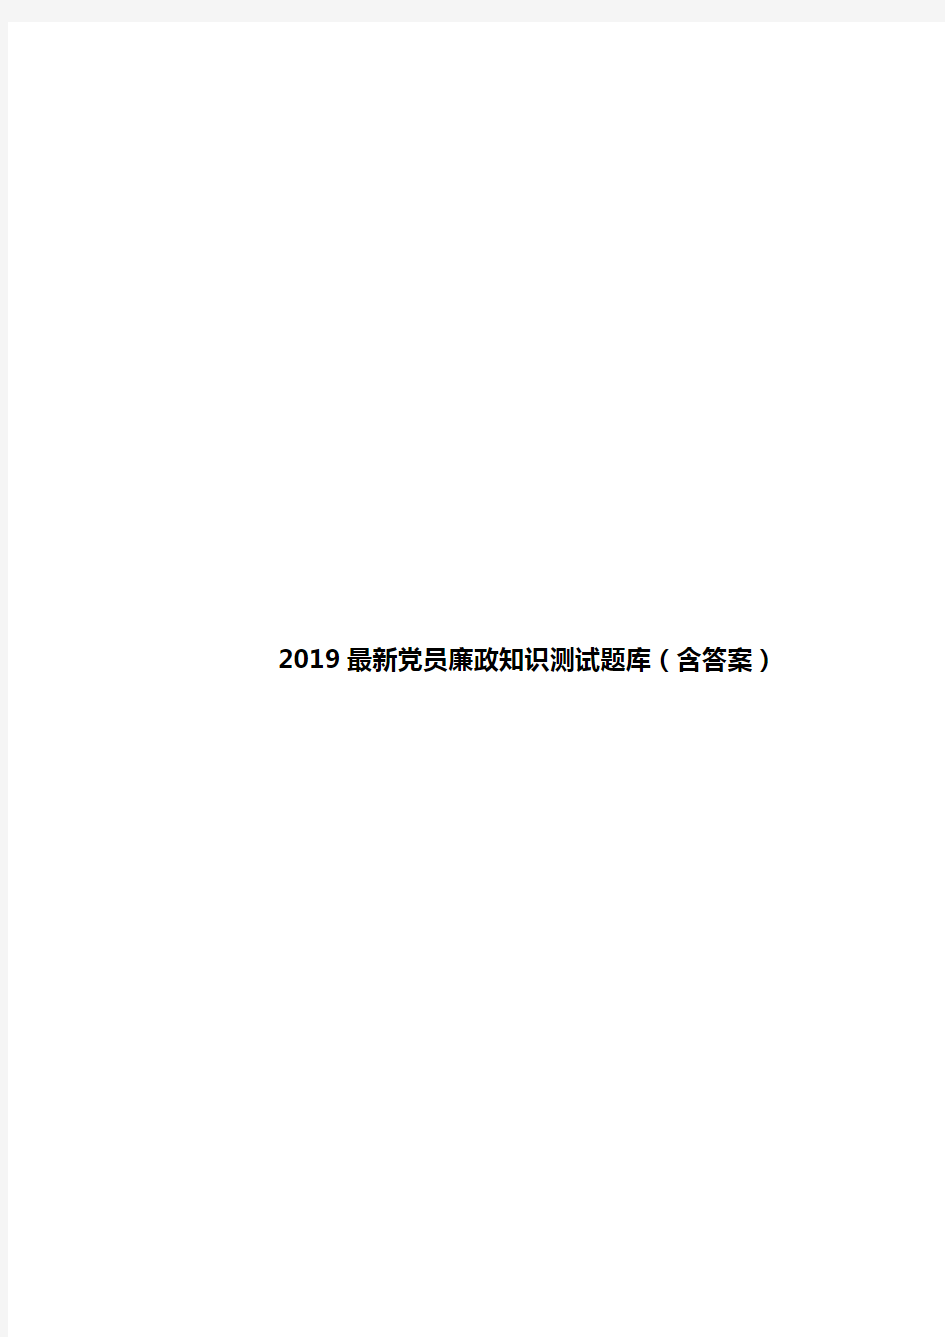 2019最新党员廉政知识测试题库(含答案)